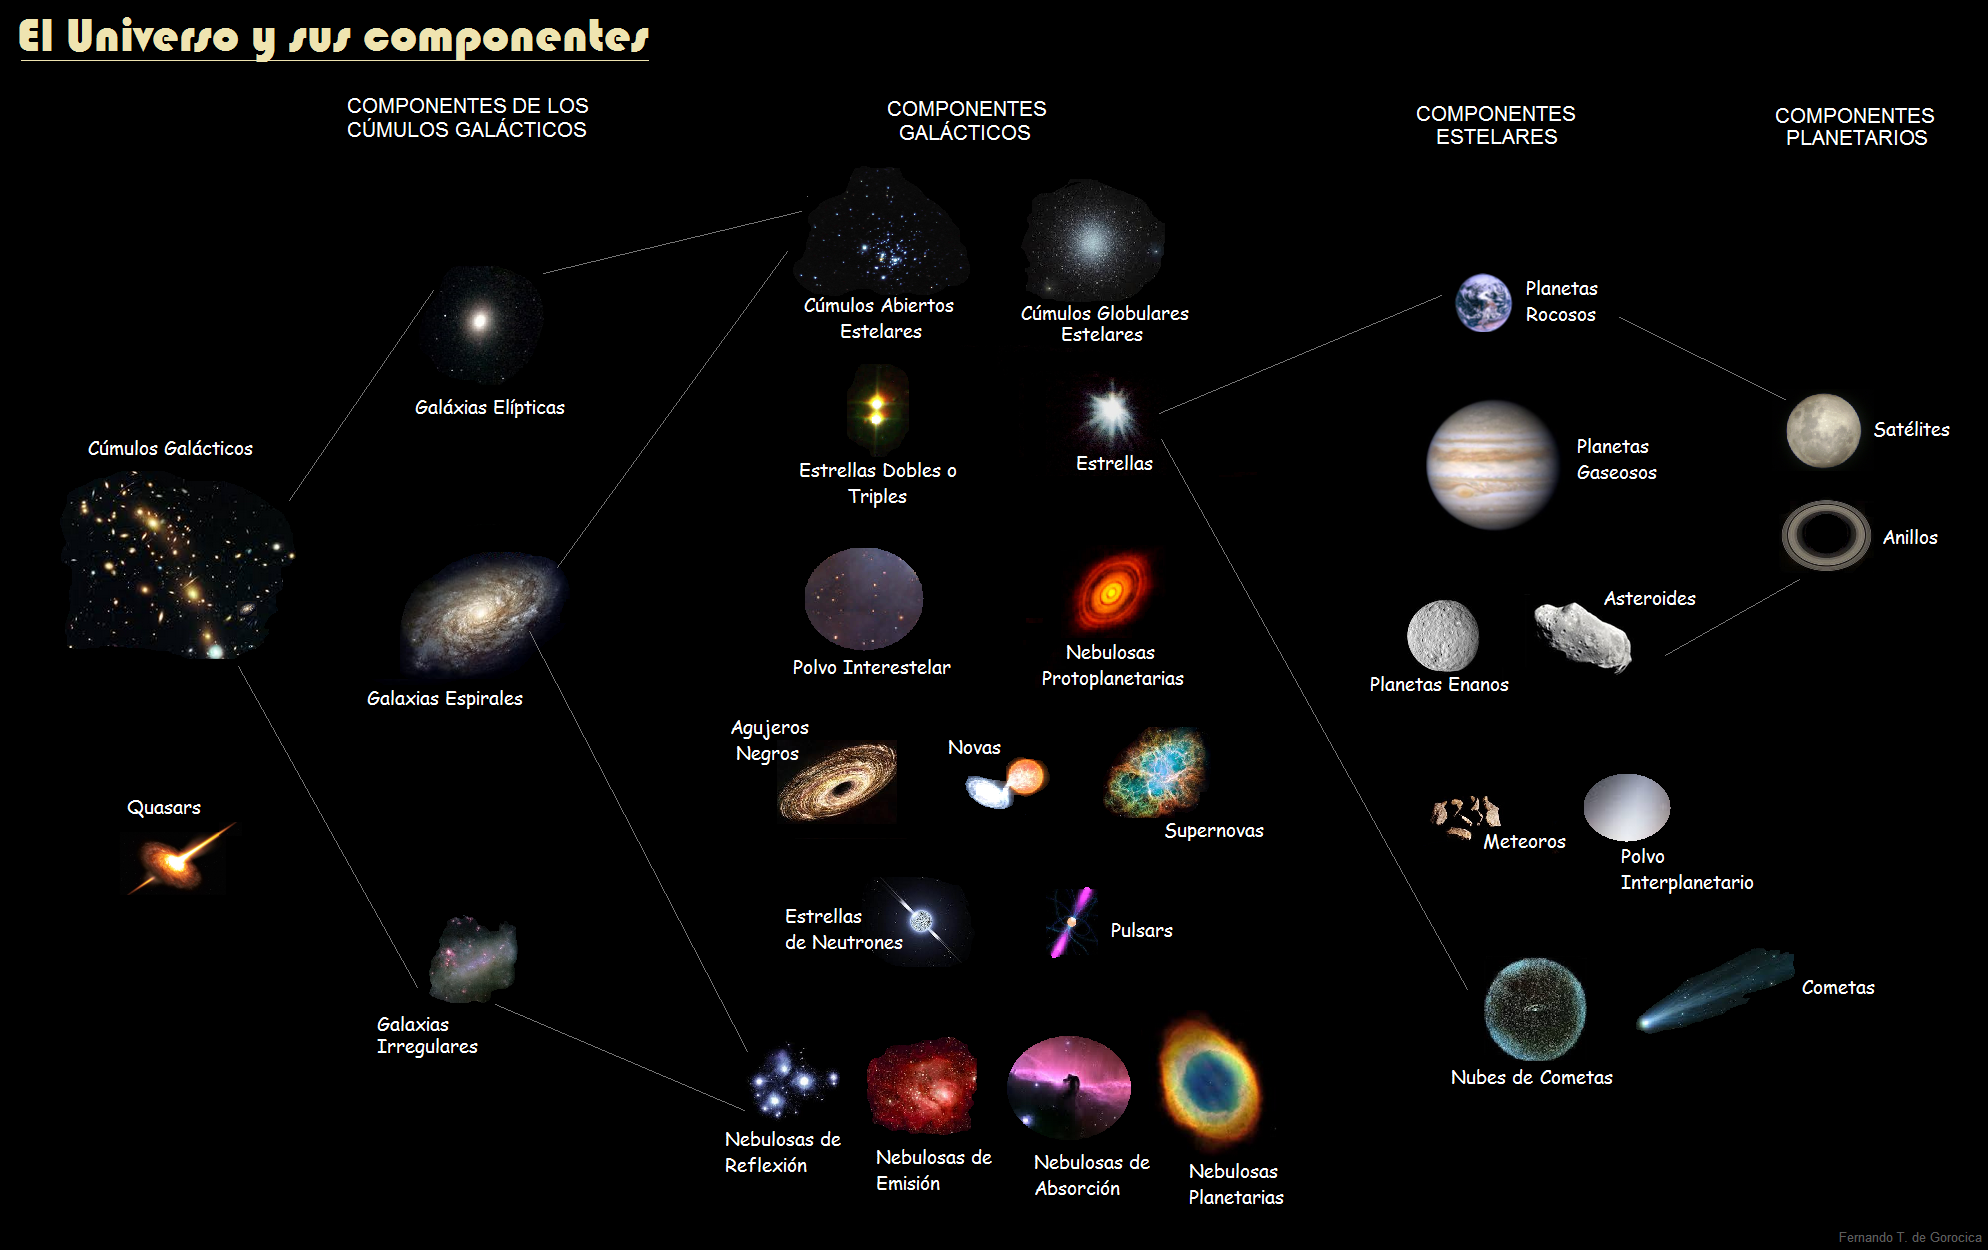 Los componentes del universo: ¡descúbrelos!